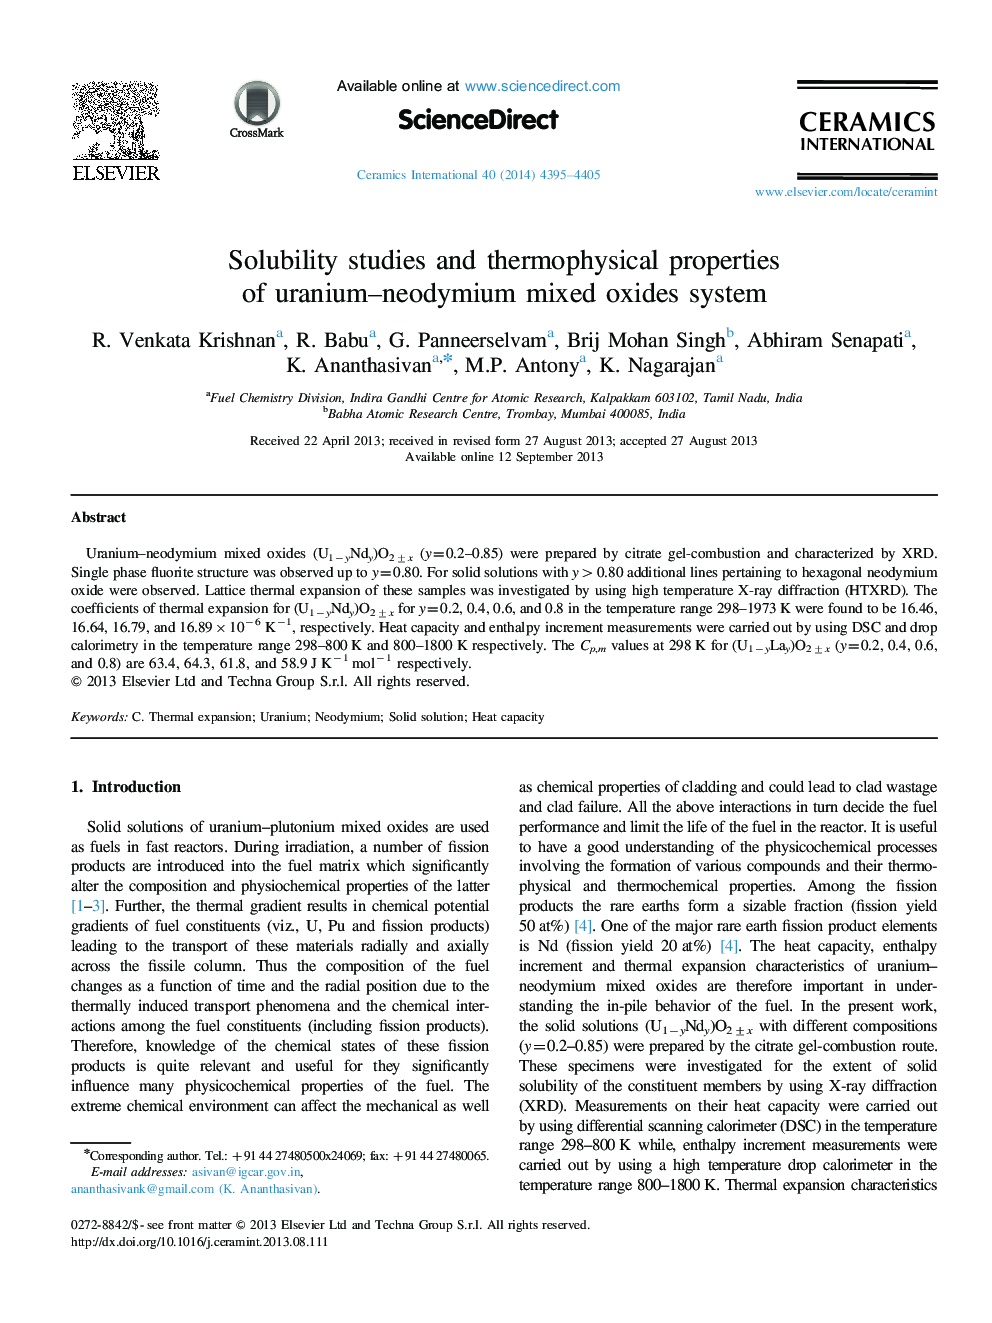 مطالعات حلالیت و خواص ترموفیزیکی سیستم اکسیداسیون مخلوطی از اورانیم 